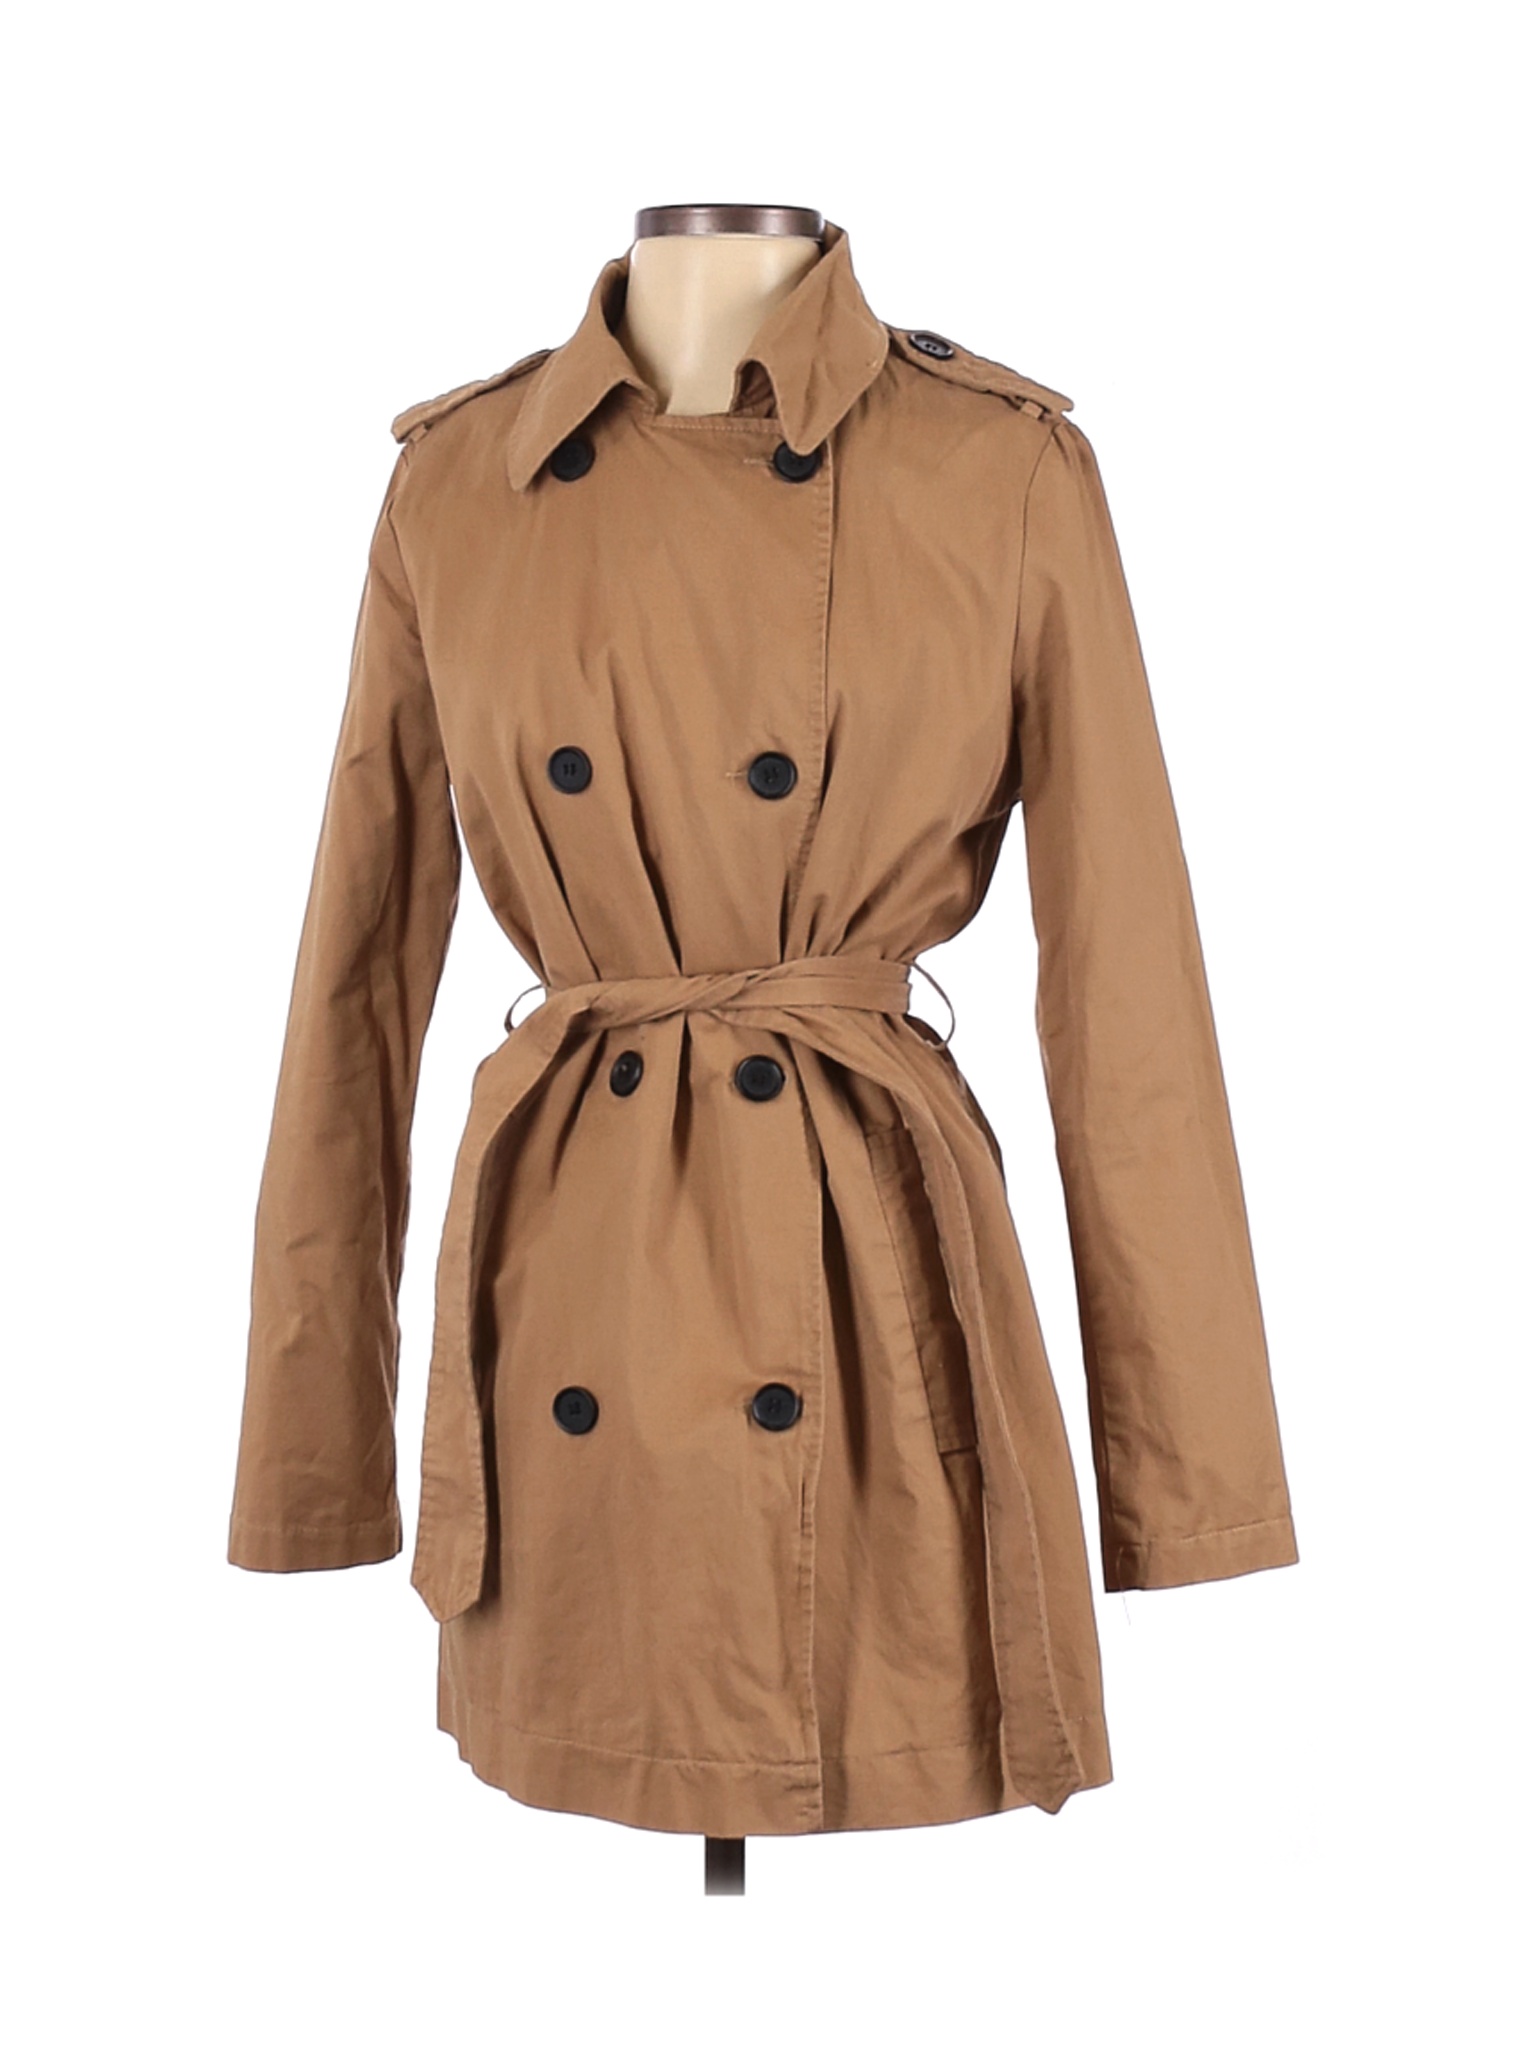 Forever 21 Women Brown Trenchcoat S | eBay